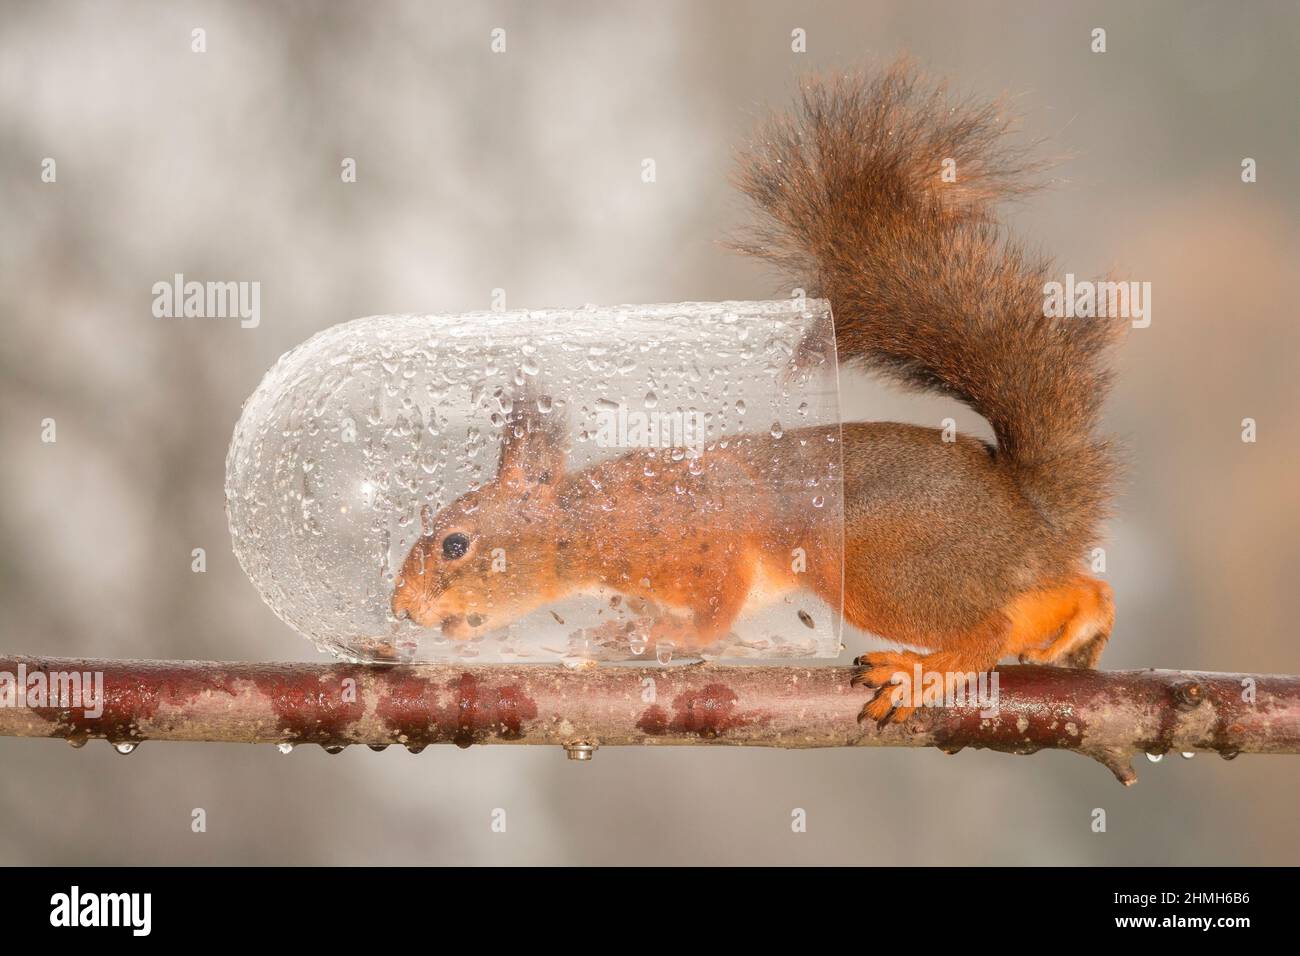 Eichhörnchen auf Niederlassung in nassen Flasche stehend Stockfoto